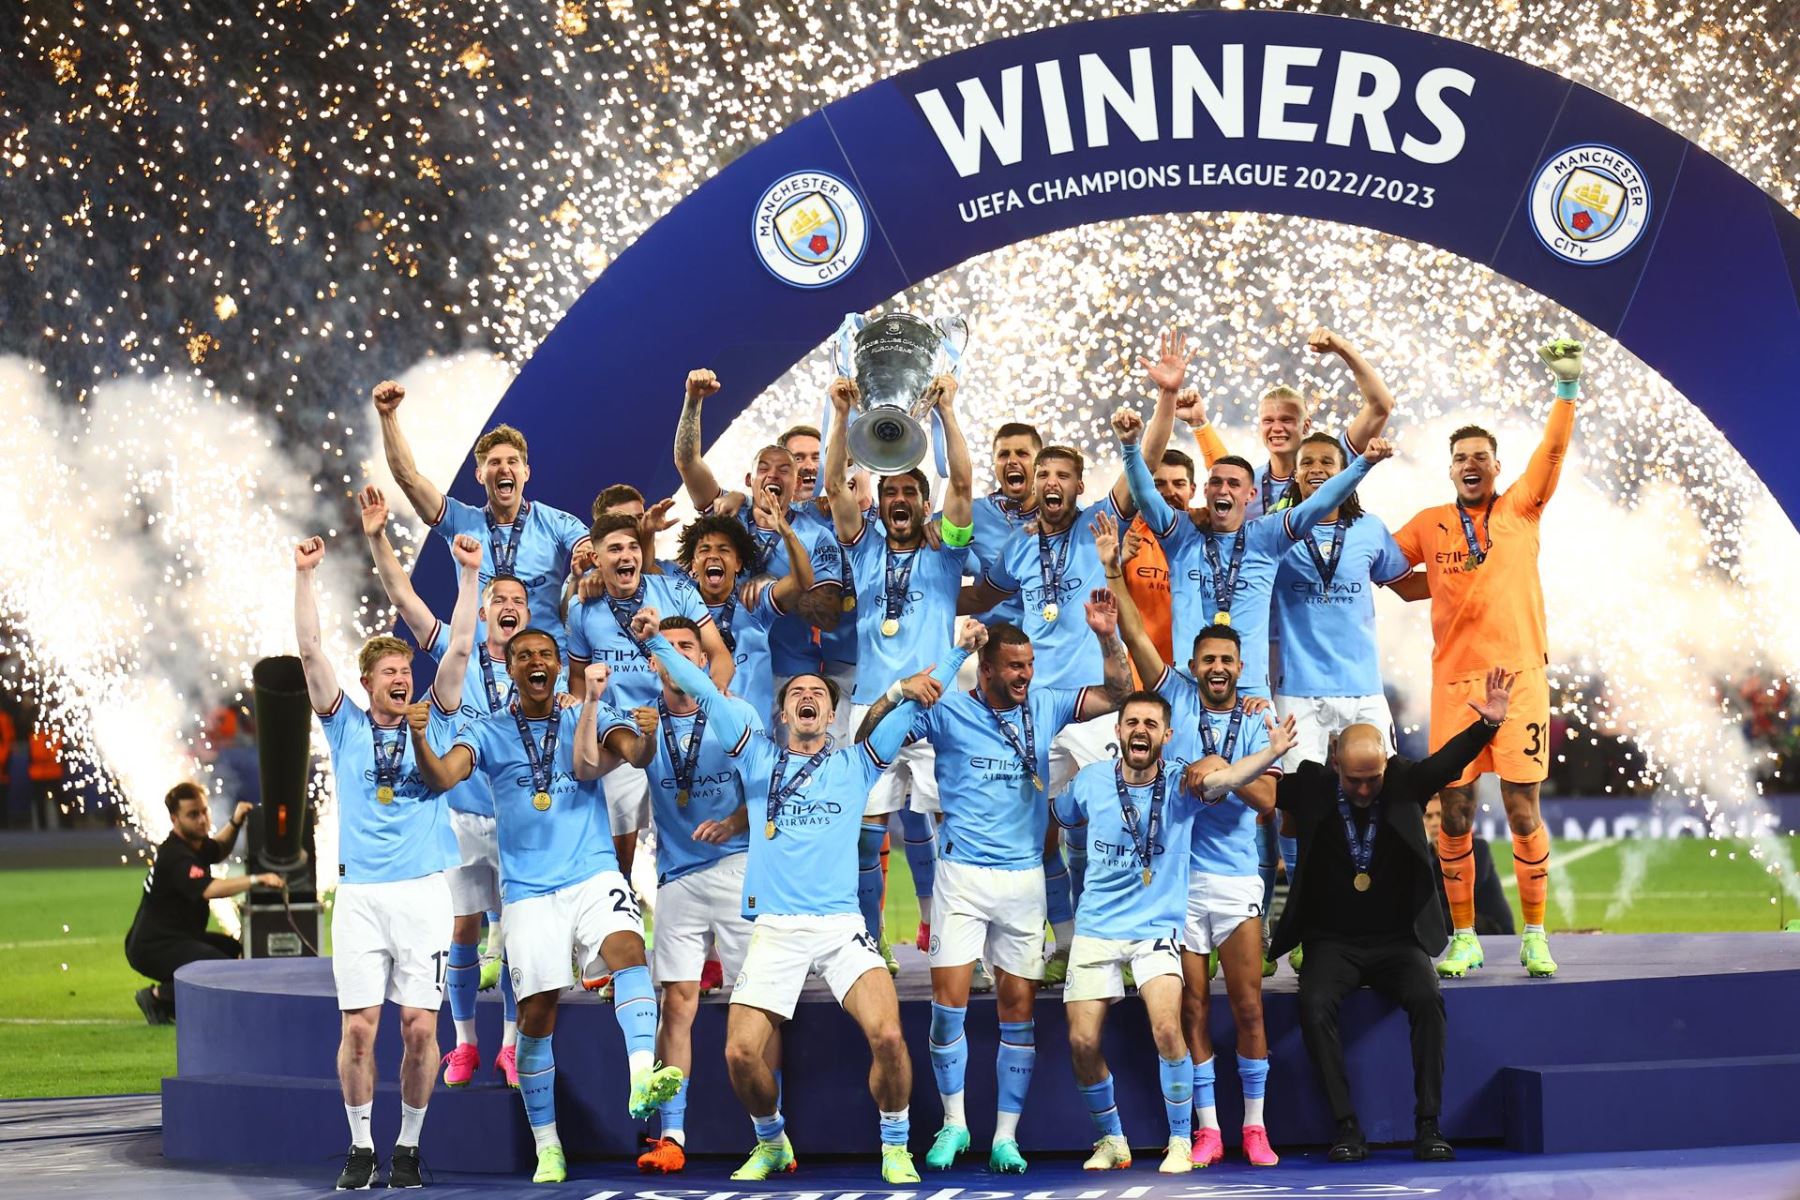 Los jugadores del Manchester City celebran con el trofeo tras ganar la final de la Liga de Campeones de la UEFA entre el Manchester City y el Inter de Milán, en Estambul, Turquía, el 10 de junio de 2023. (Liga de Campeones, Turquía, Estanbul)

Foto: EFE